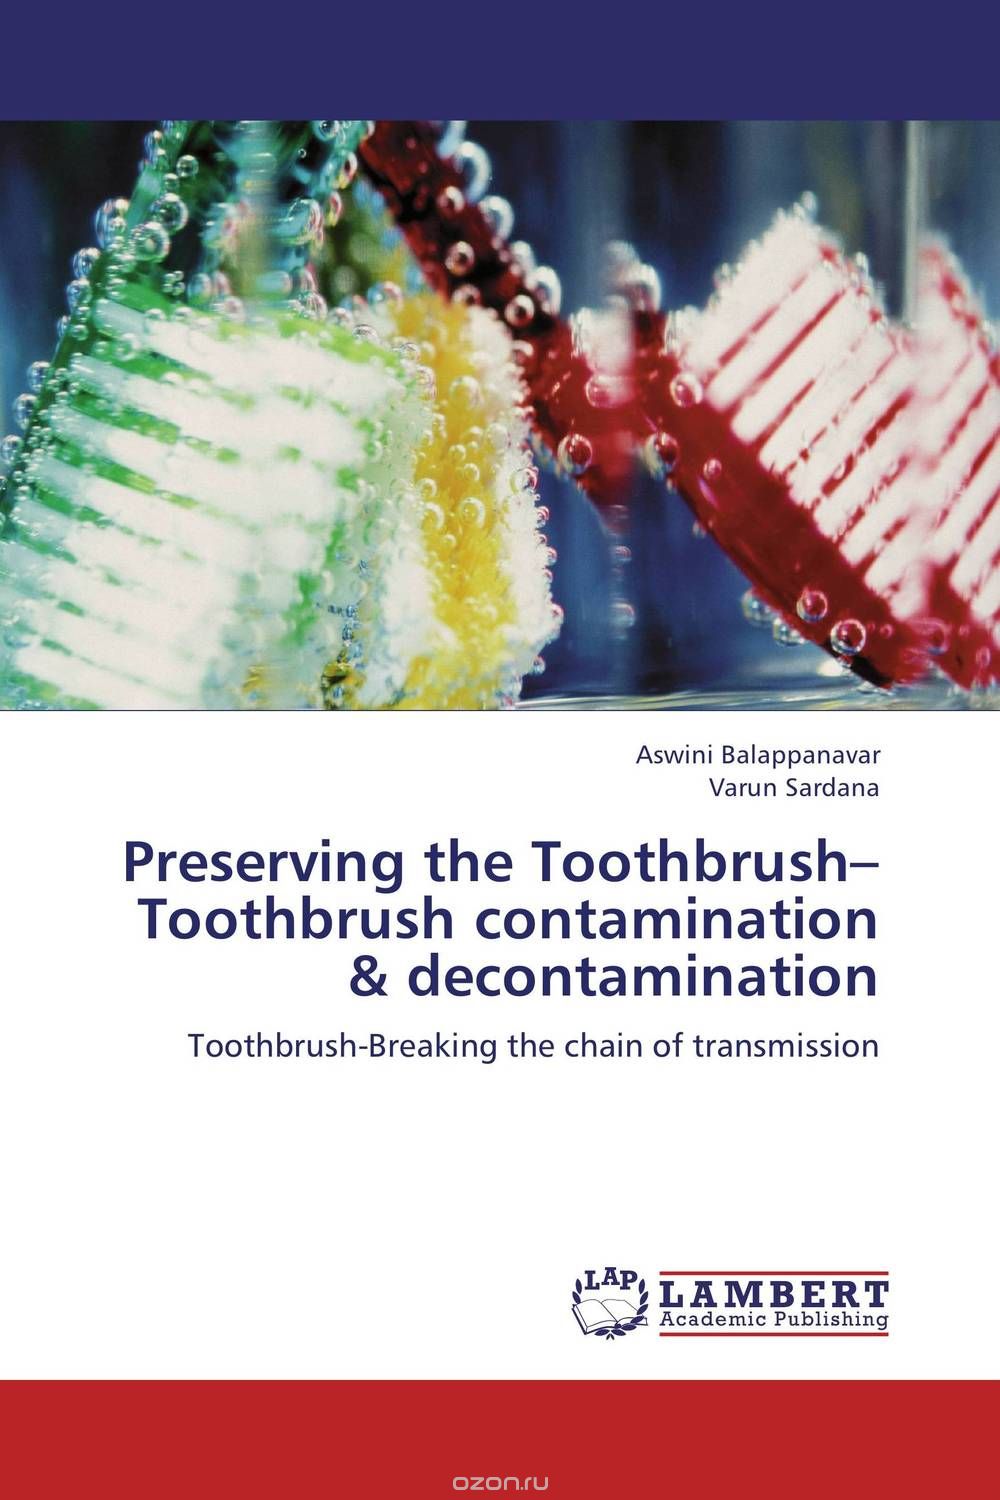 Скачать книгу "Preserving the Toothbrush–Toothbrush contamination & decontamination"